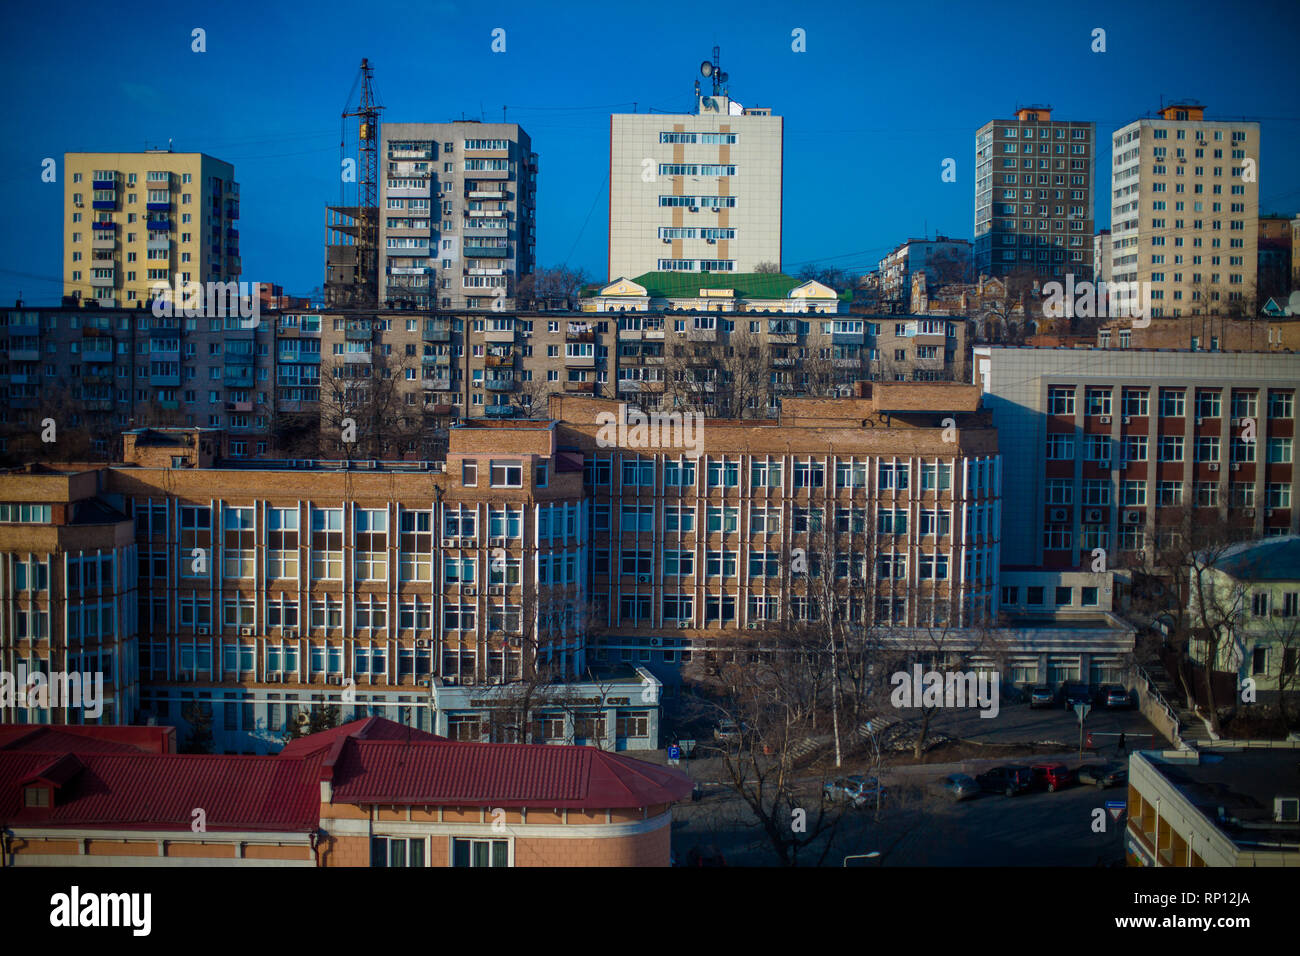 Ein Standard-Vorstadtgebäude im Stil der 50er, 60er und 70er Jahre in Wladiwostok, Russland Stockfoto